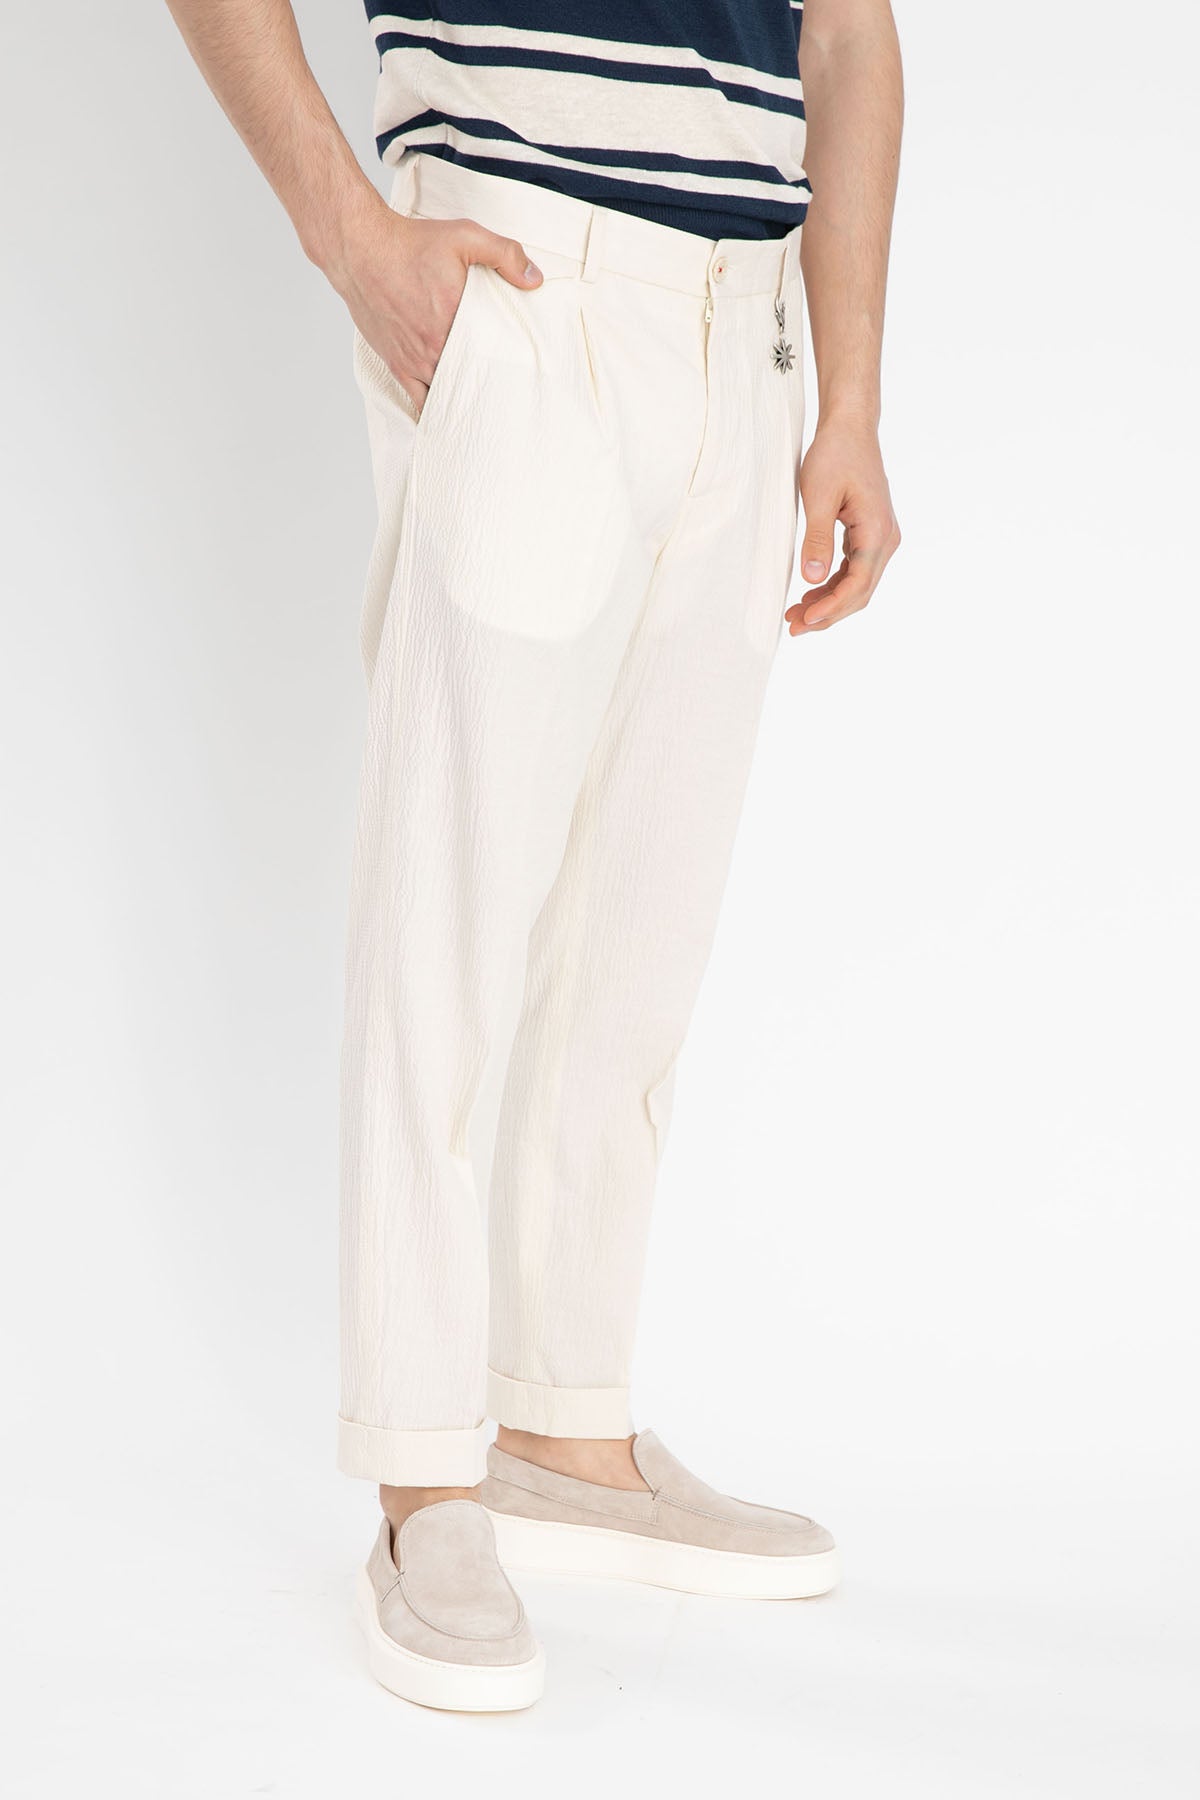 Manuel Ritz Tek Pile Duble Paça Gofre Pantolon-Libas Trendy Fashion Store